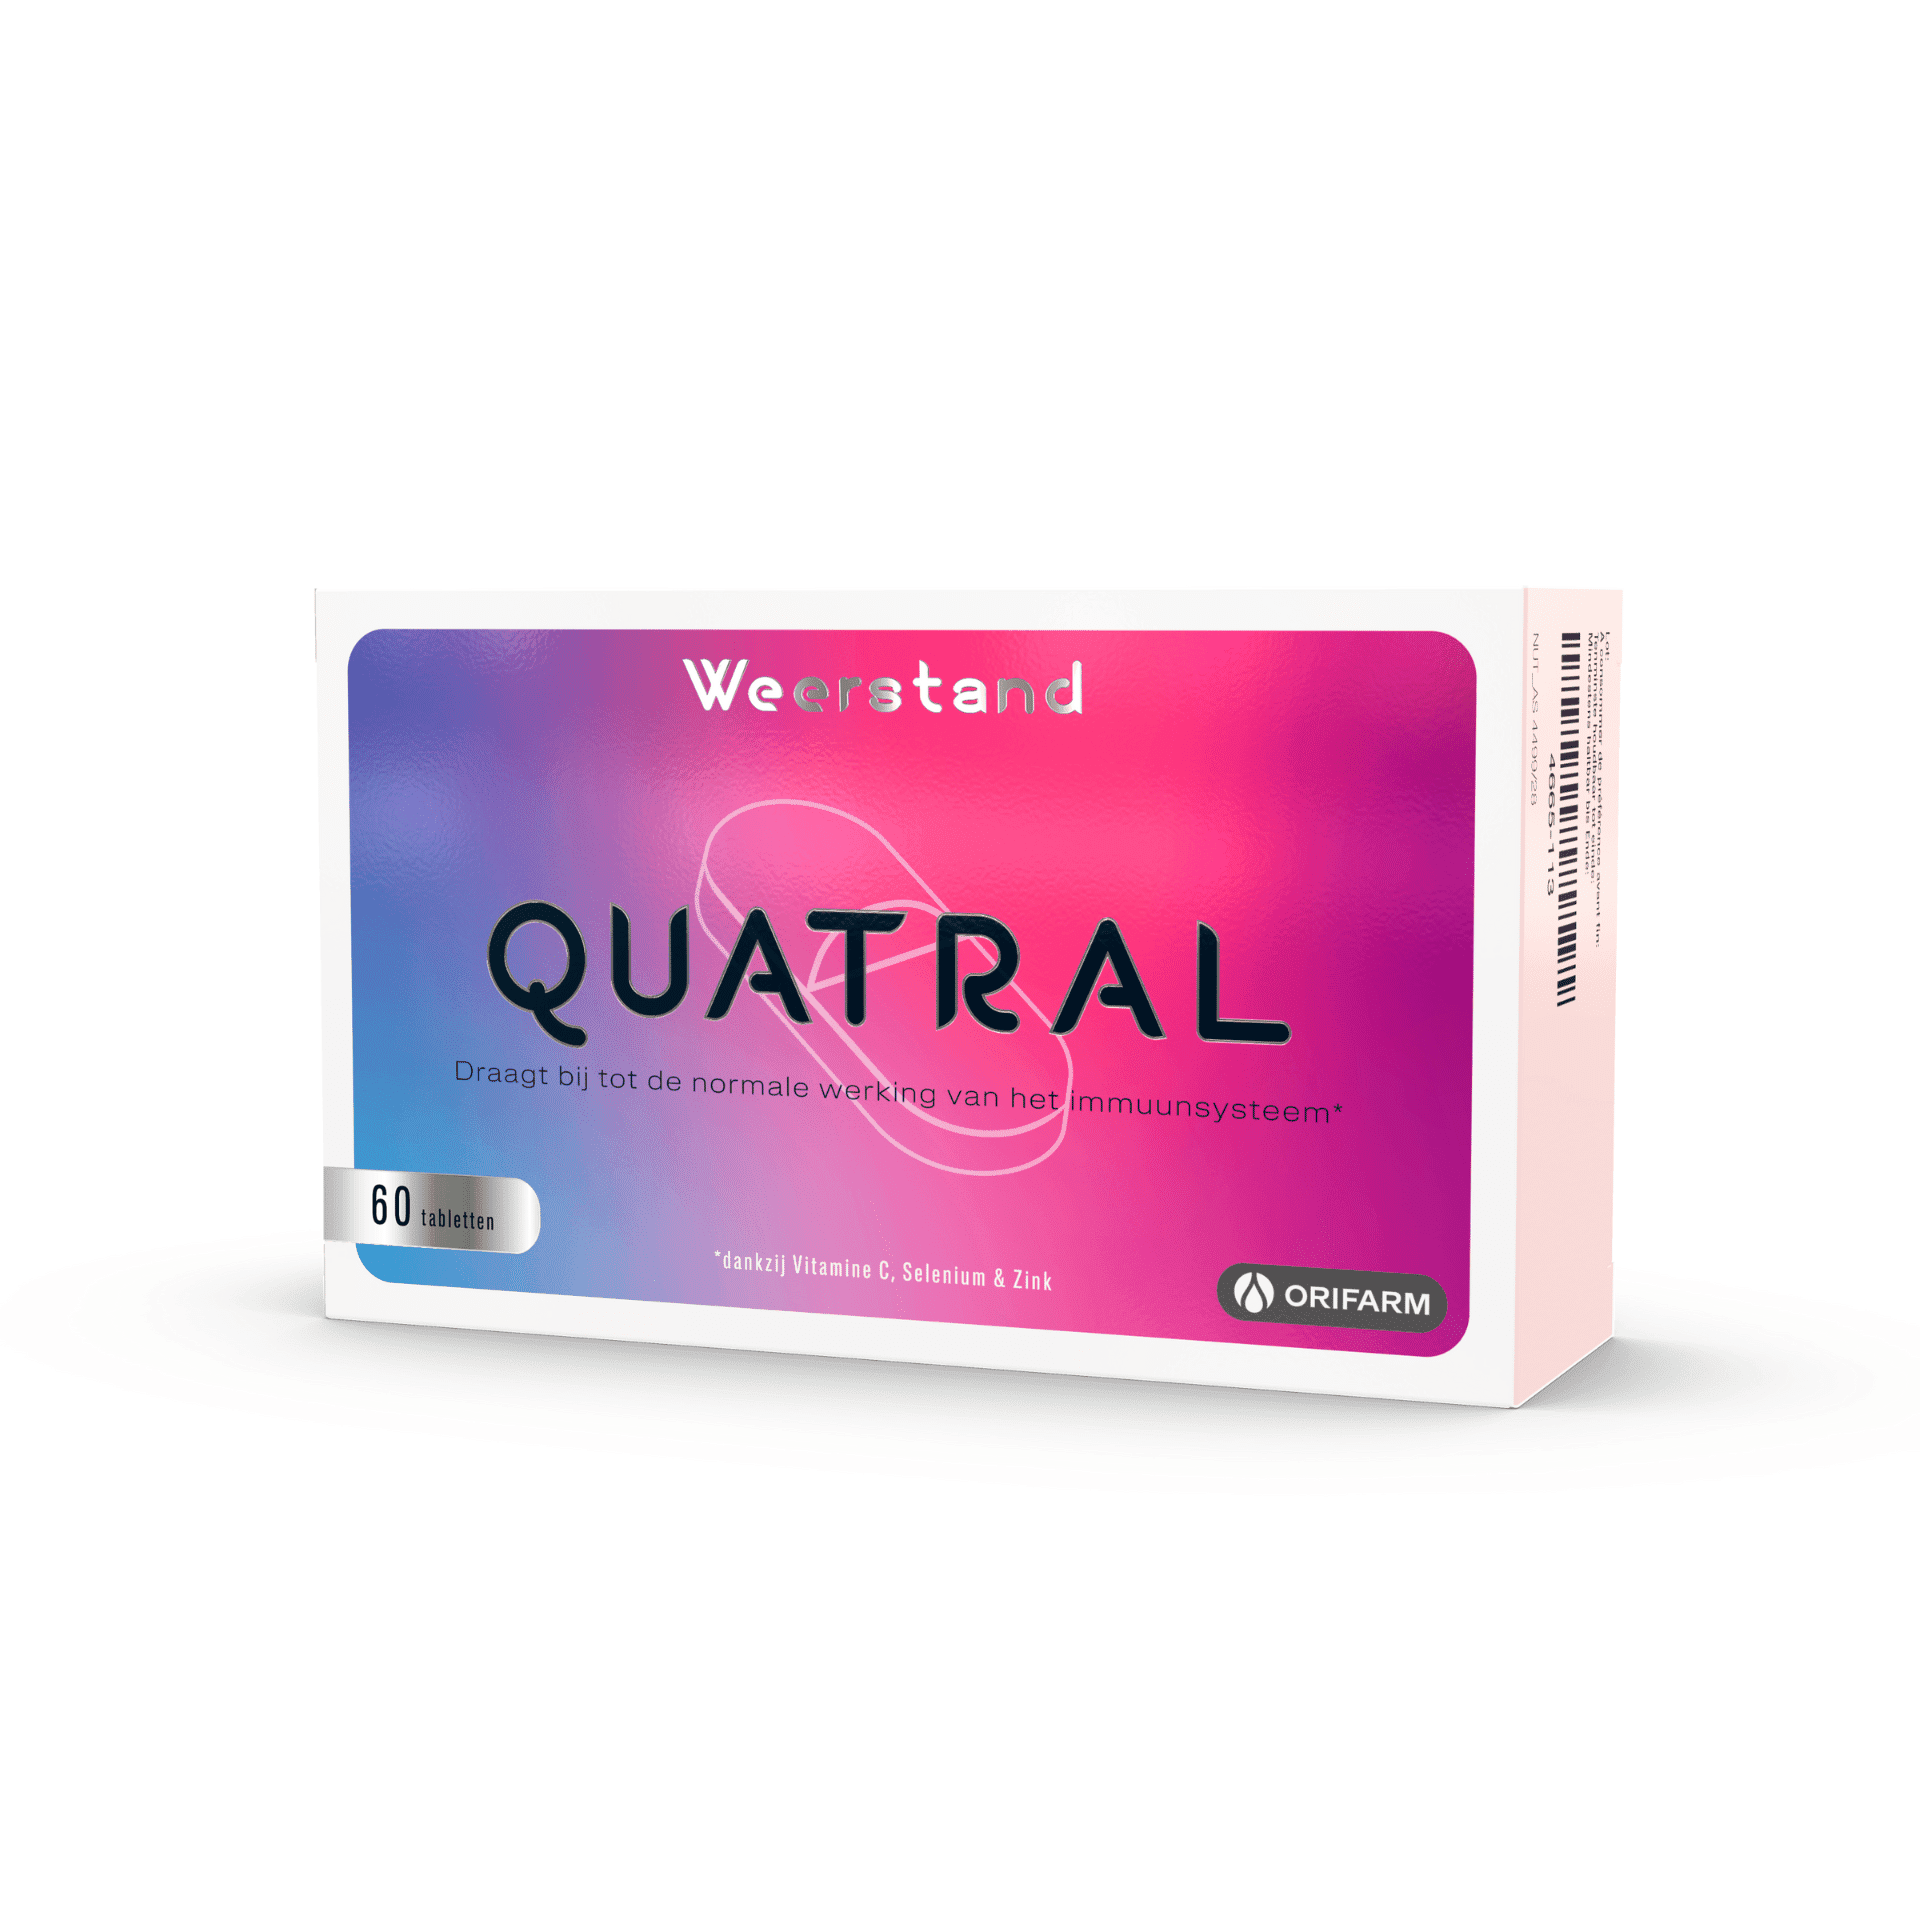 Quatral